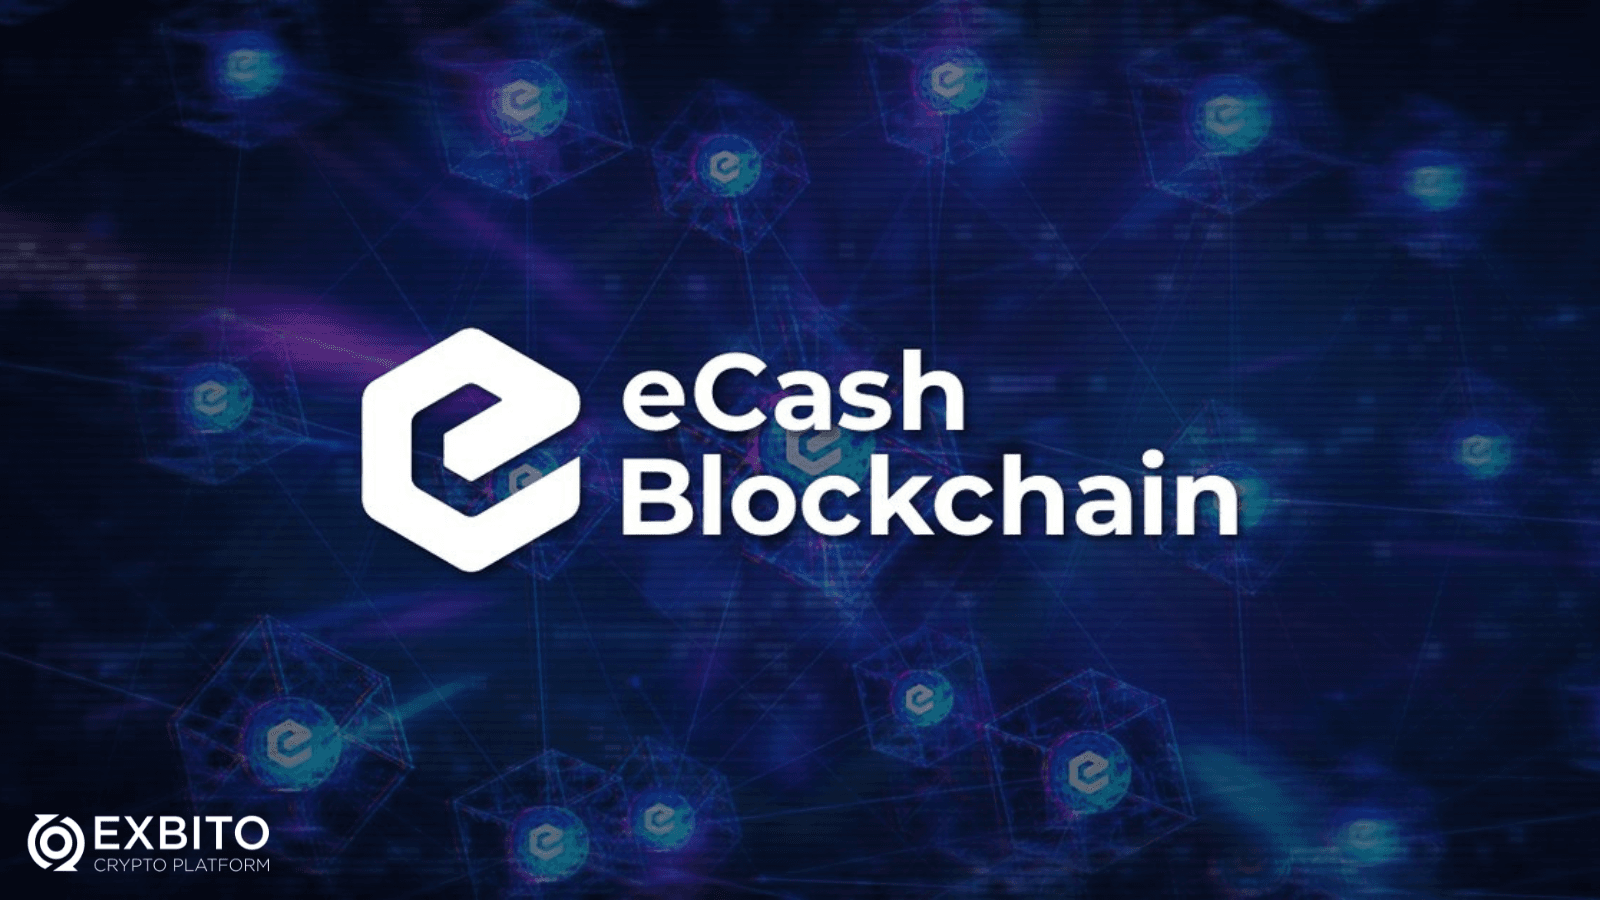 بلاک چین ای کش (eCash Blockchain)